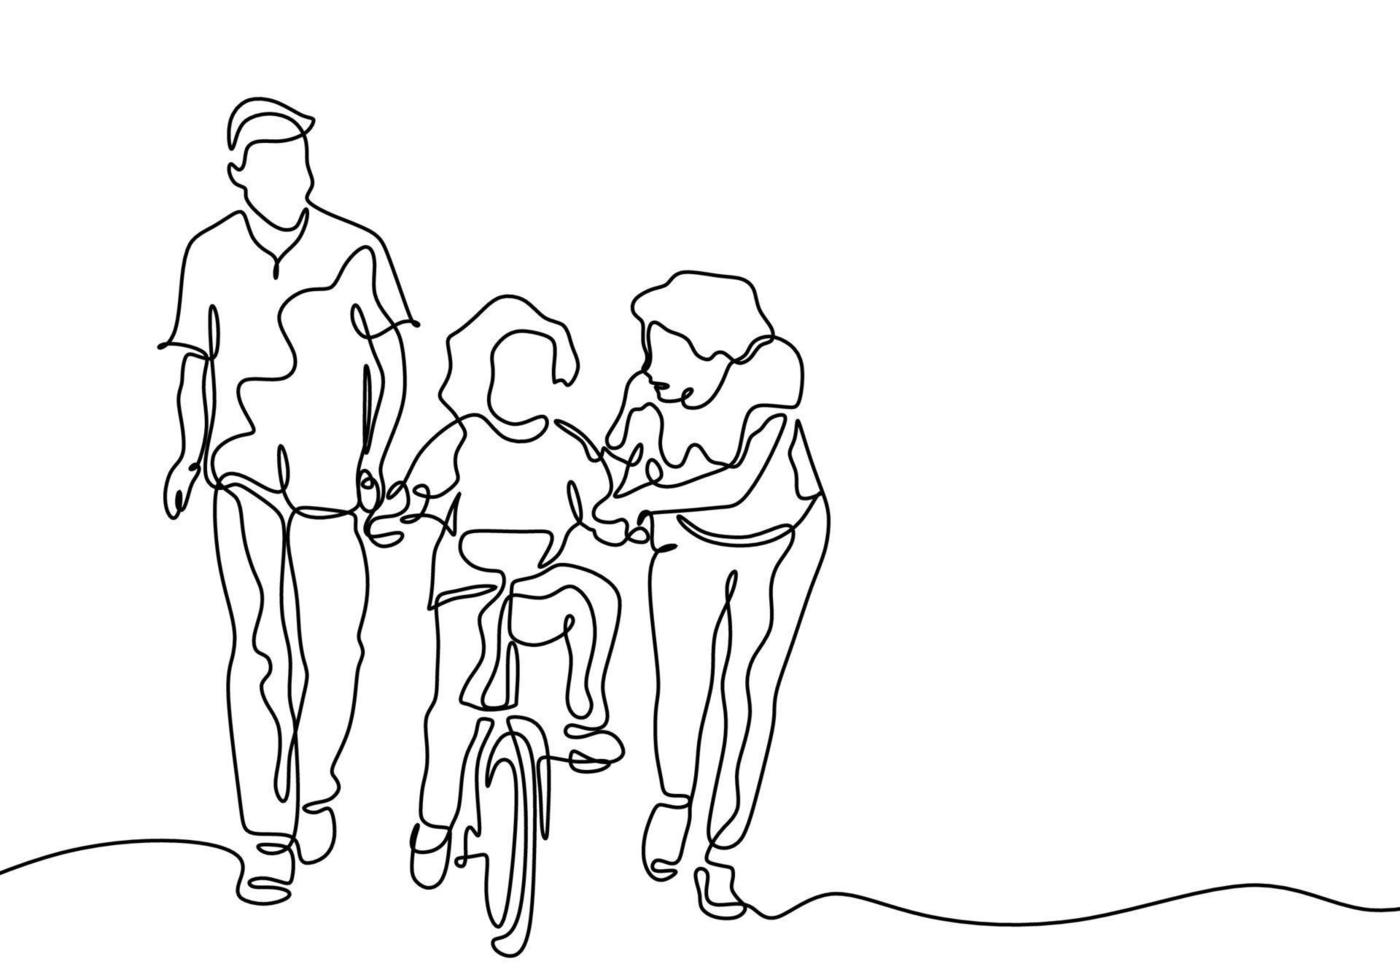 disegno continuo di una linea di condivisione familiare con amore. padre e madre aiutano il loro bambino ad andare in bicicletta. design minimalista. vettore